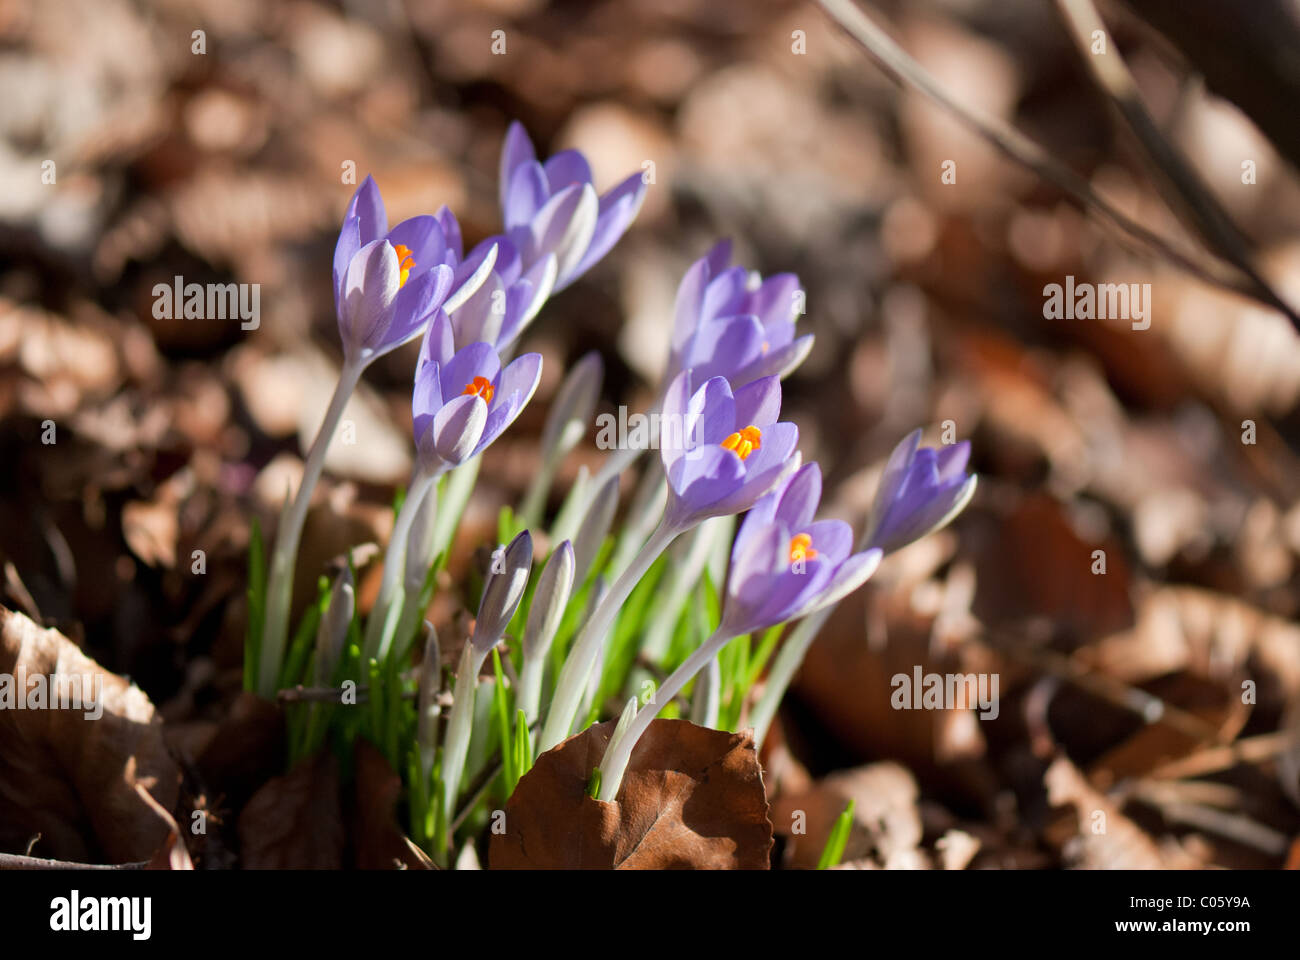 Crocuses flowering in spring Stock Photo